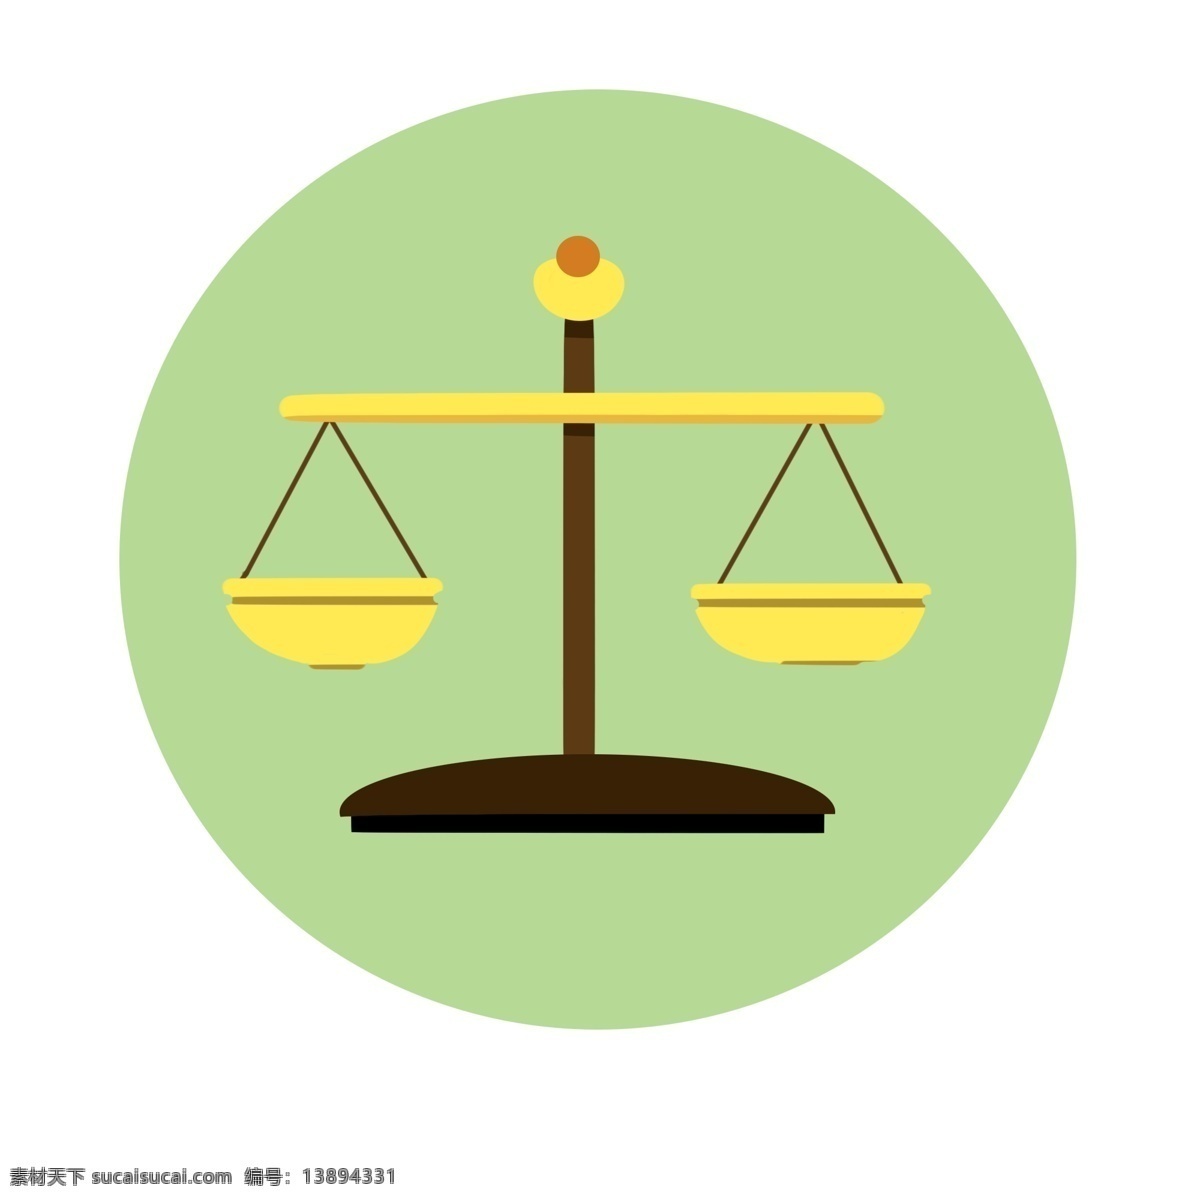 公平 正义 金色 天平 法律 衡量 平衡 手绘 托盘 比较 计量 重量 金属 黑色称